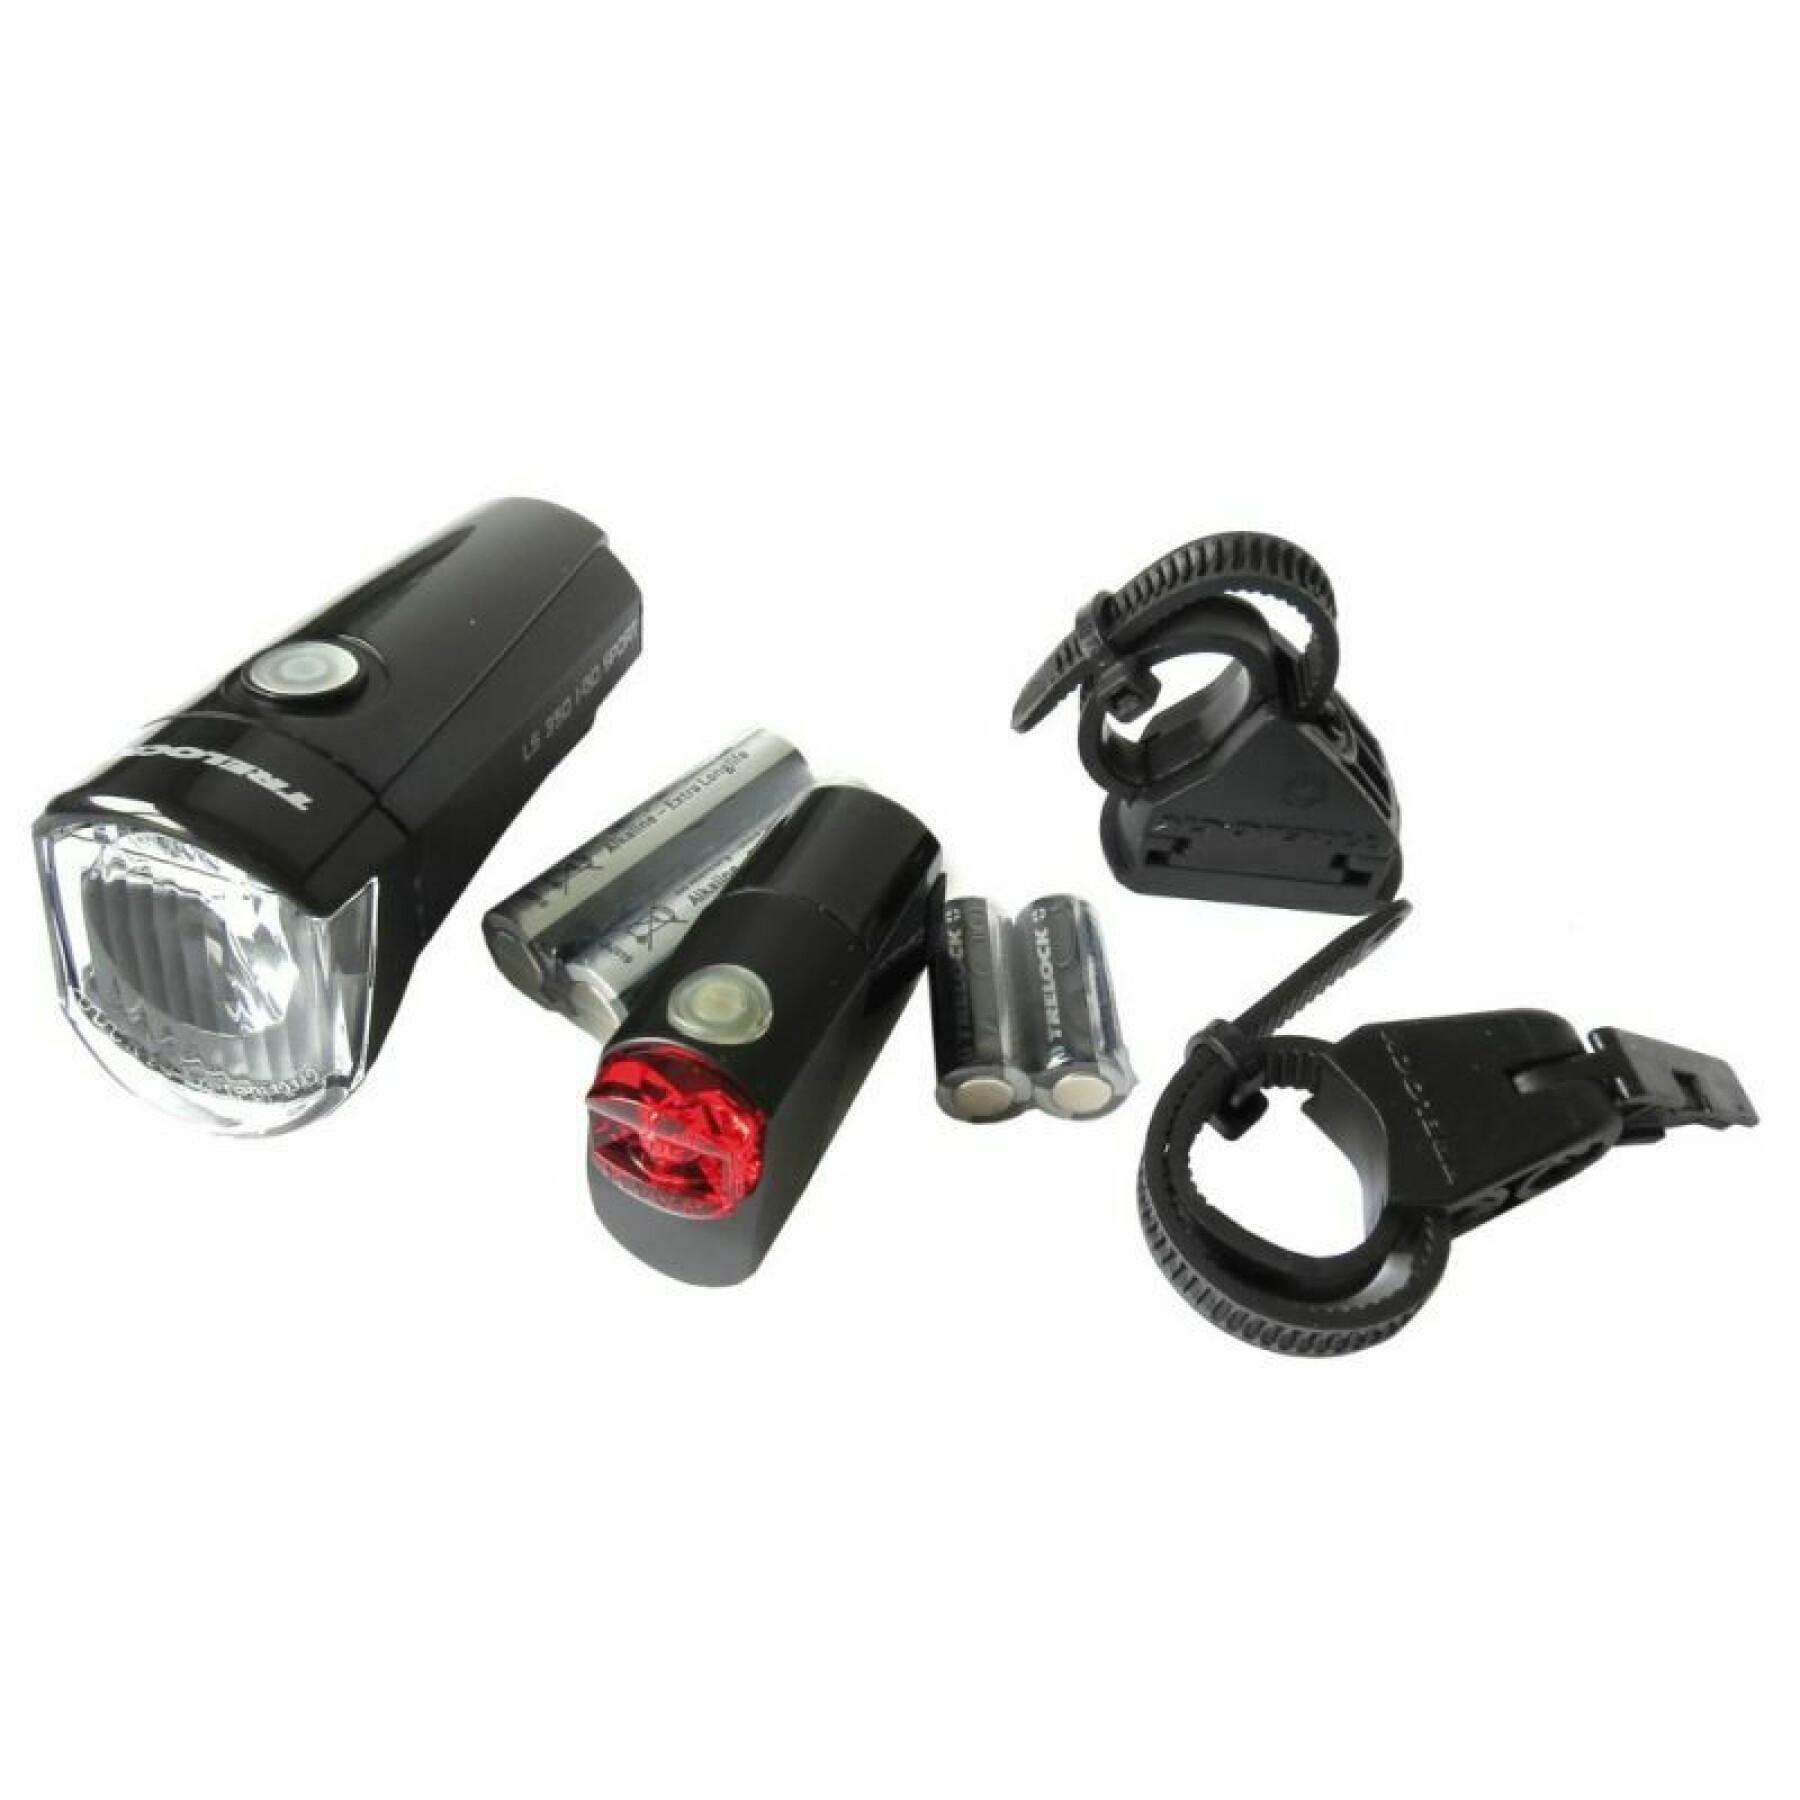 Kit di illuminazione a batteria Trelock i-go sport ls350 + ls710 reego